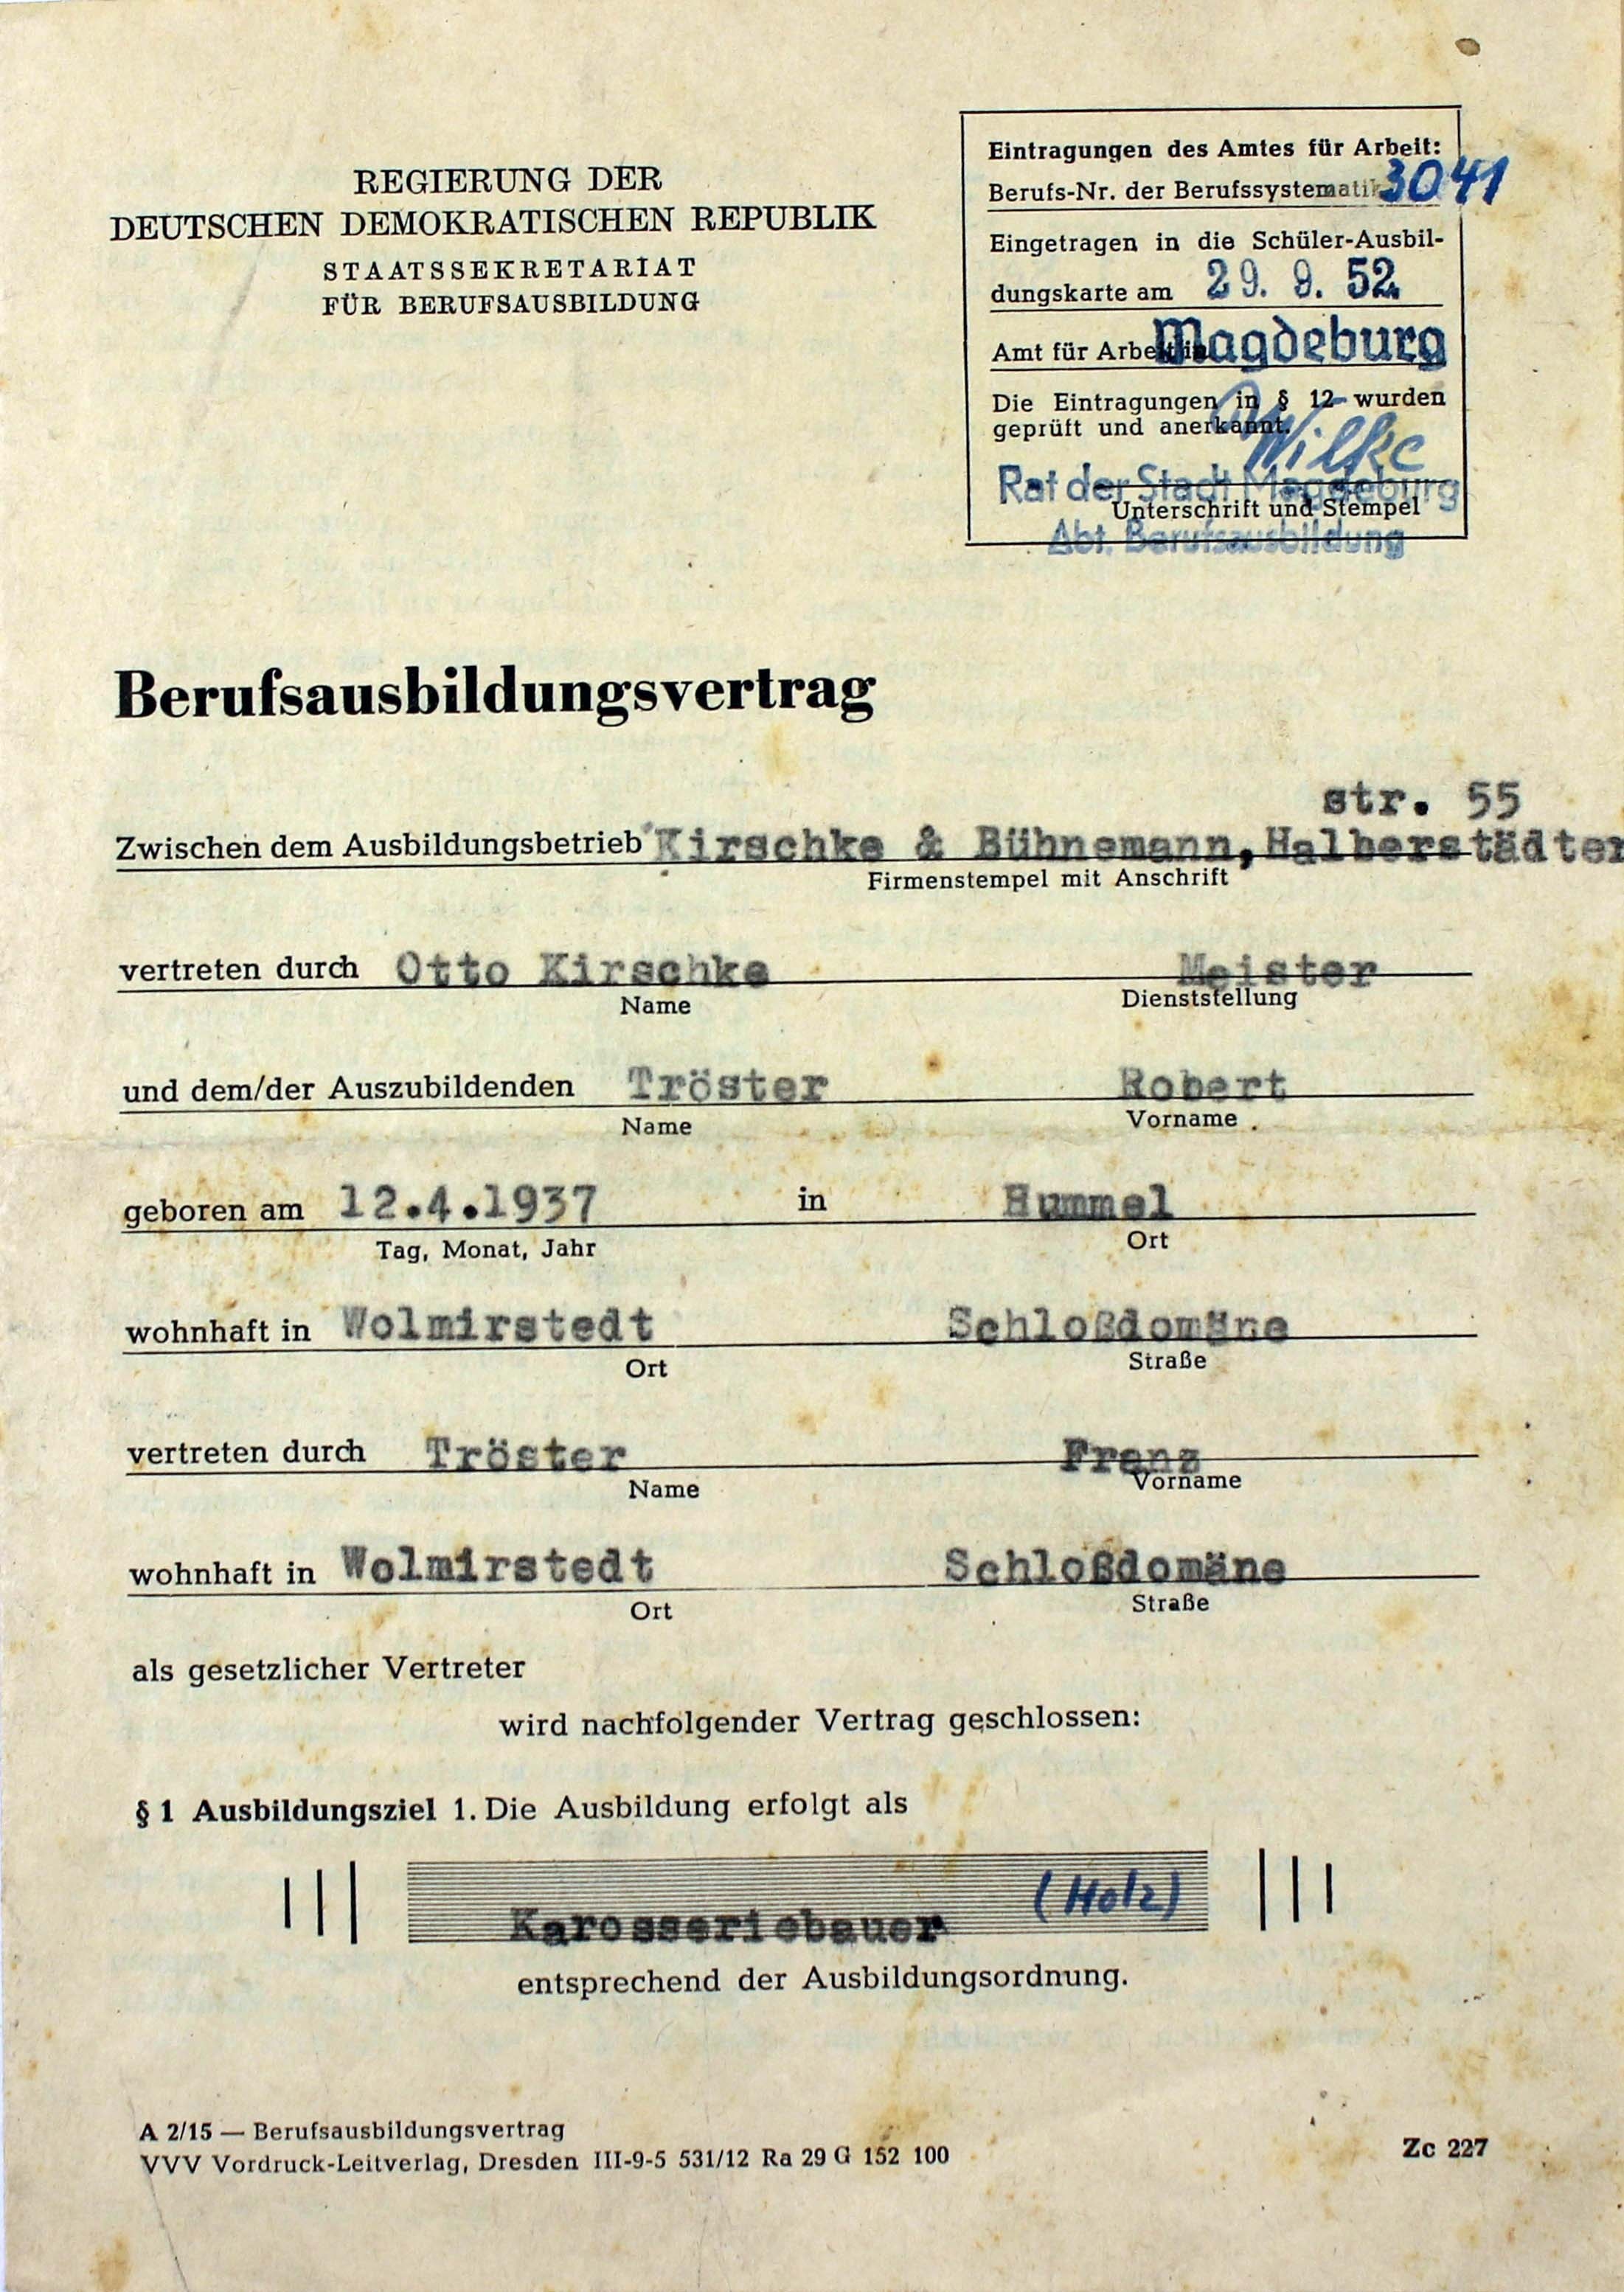 Berufausbilungsvertrag von Robert Tröster, 1952 (Museum Wolmirstedt RR-F)